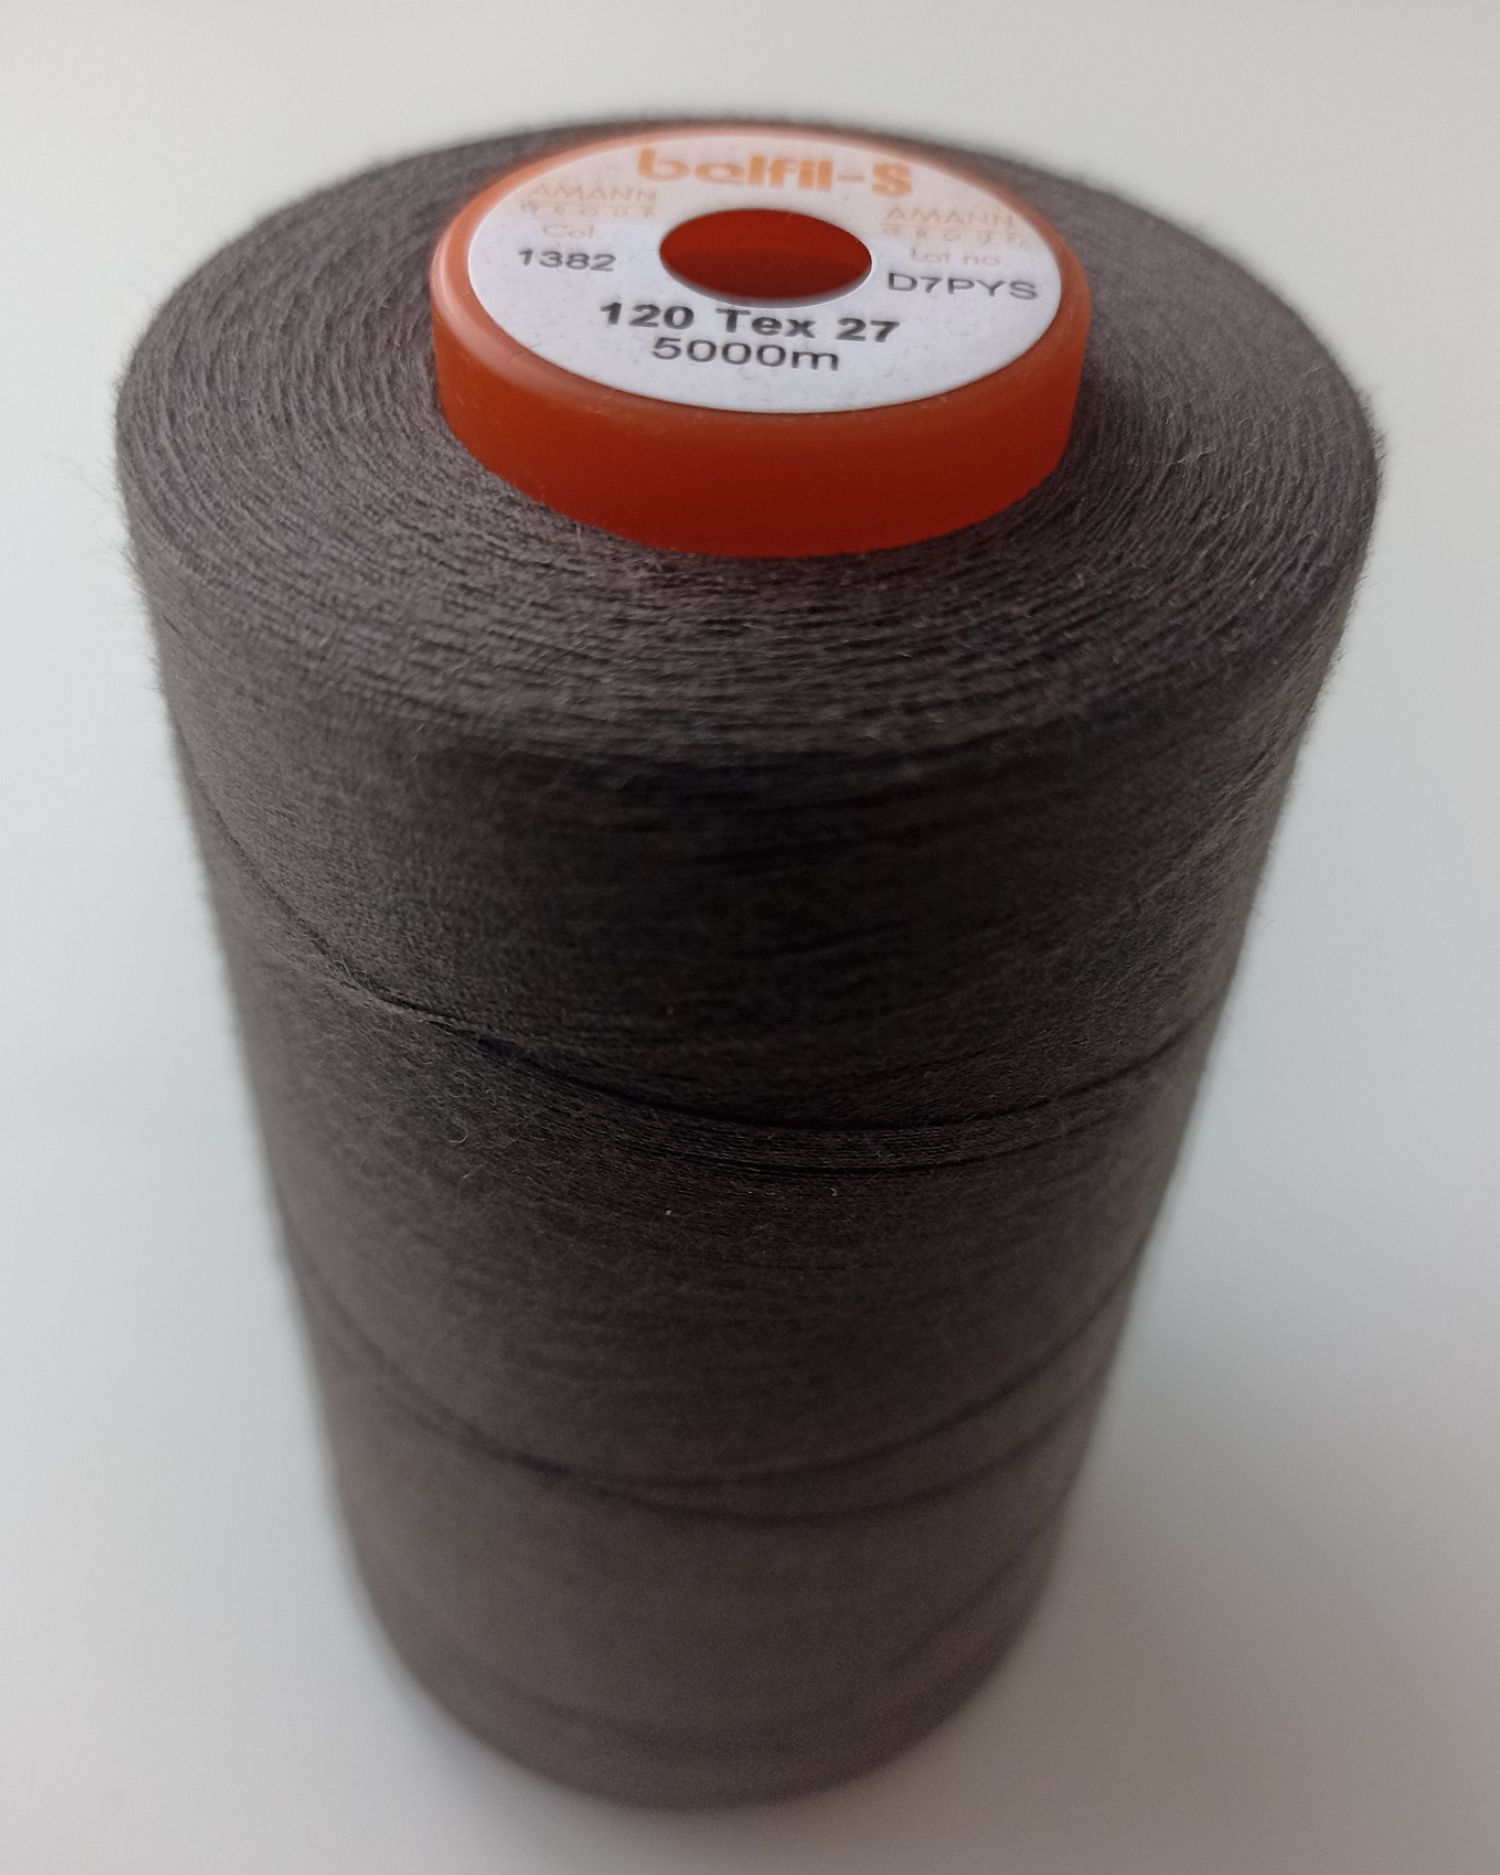 Universal sewing thread Belfil S 120, 5000m, purple